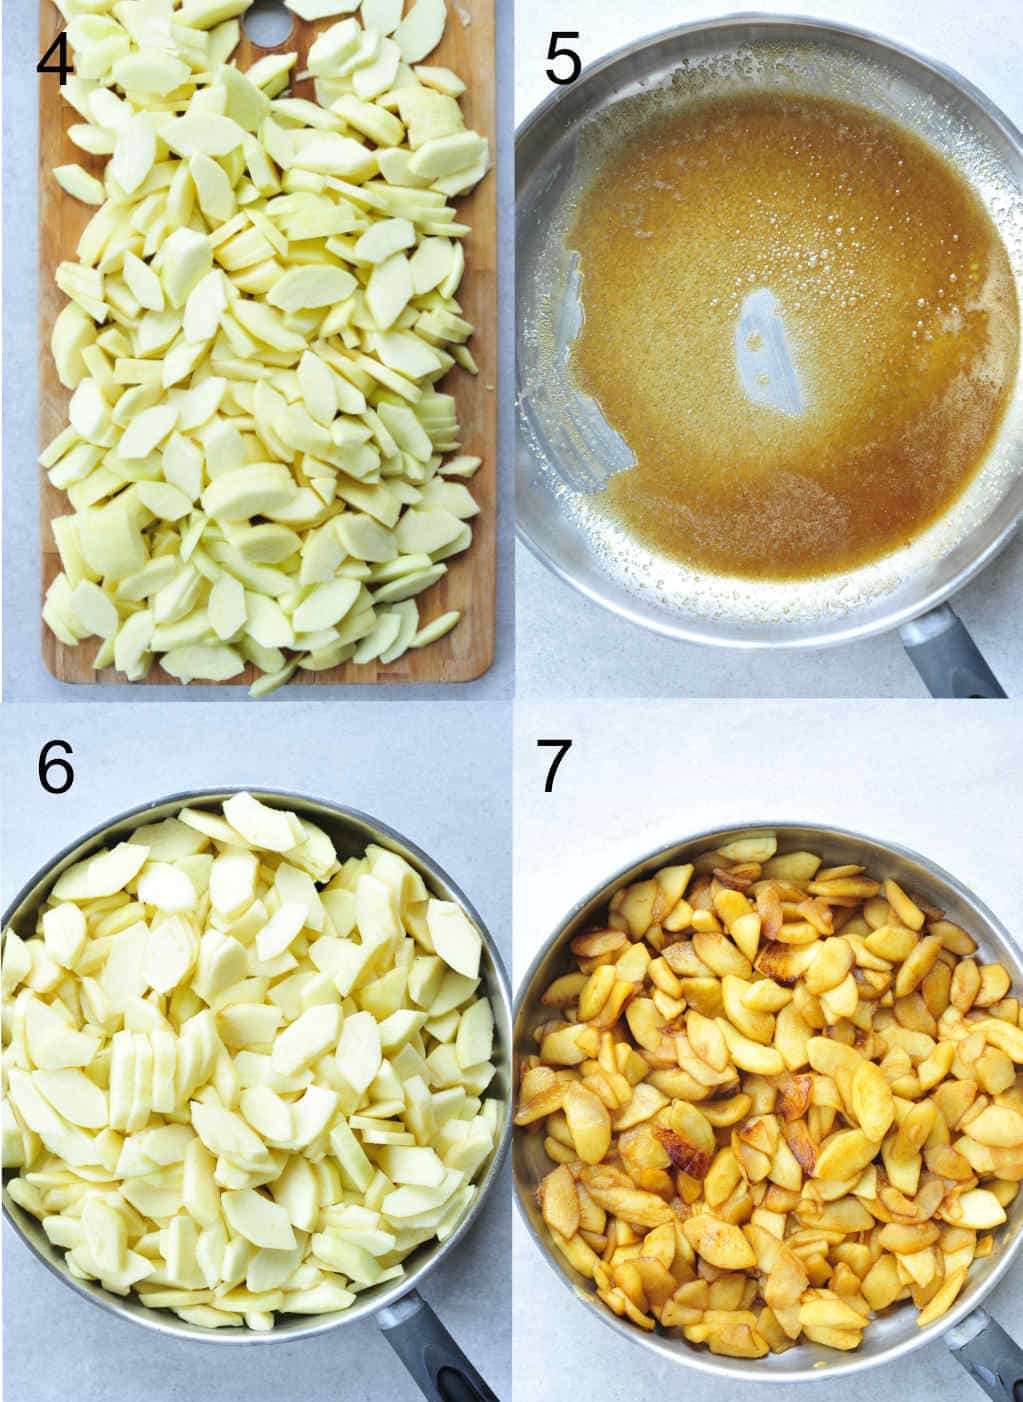 apple filling preparation steps